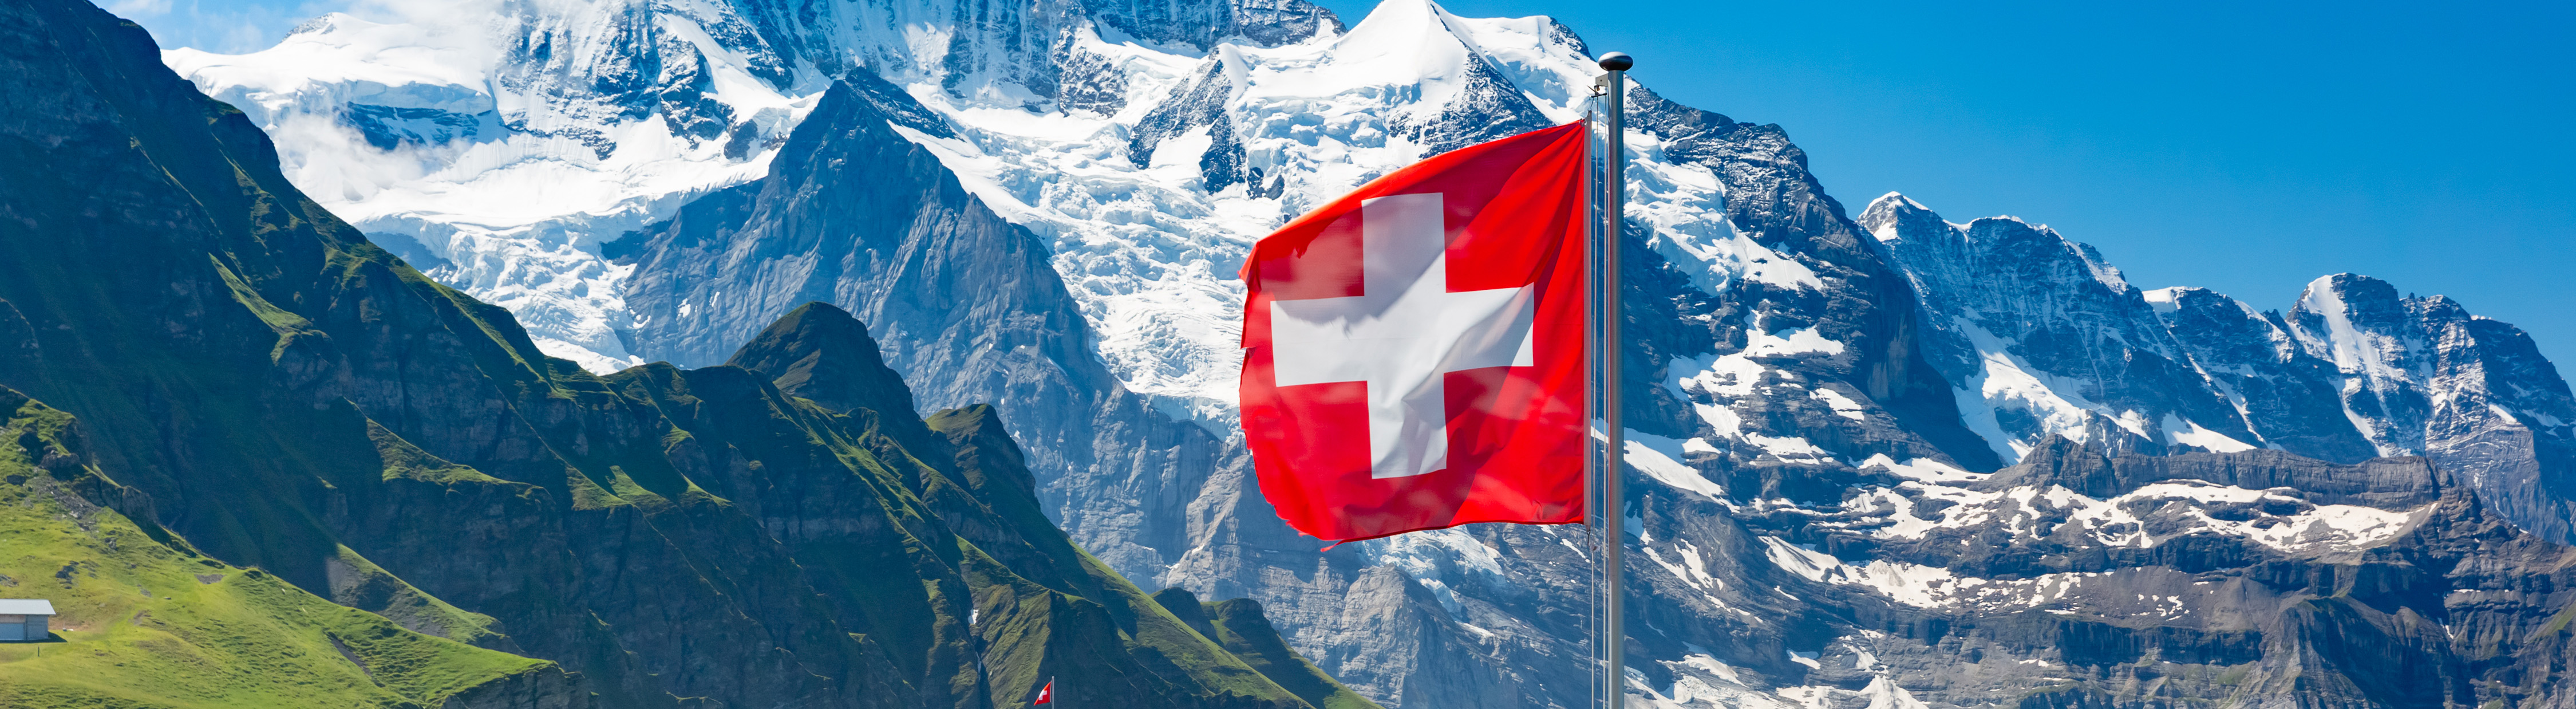 Berichtssaison: Schweizer Unternehmen legen Zahlen vor